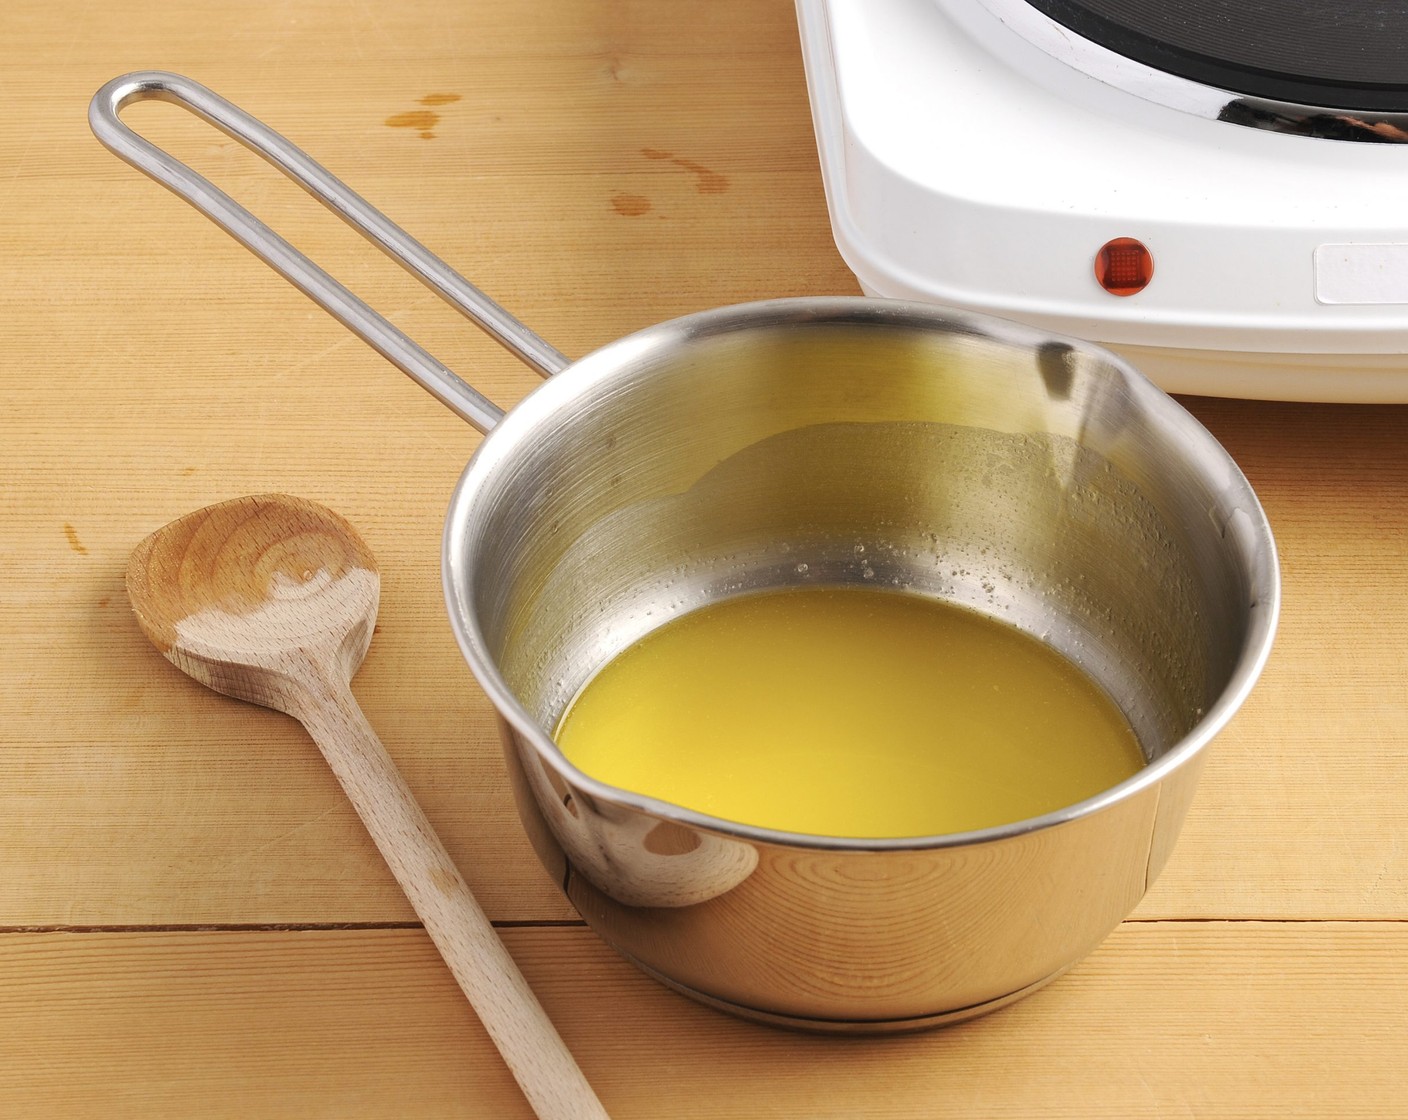 Schritt 1 Alle Zutaten bereitstellen. Butter (8 Teelöffel) bei kleiner Hitze schmelzen, beiseite stellen.